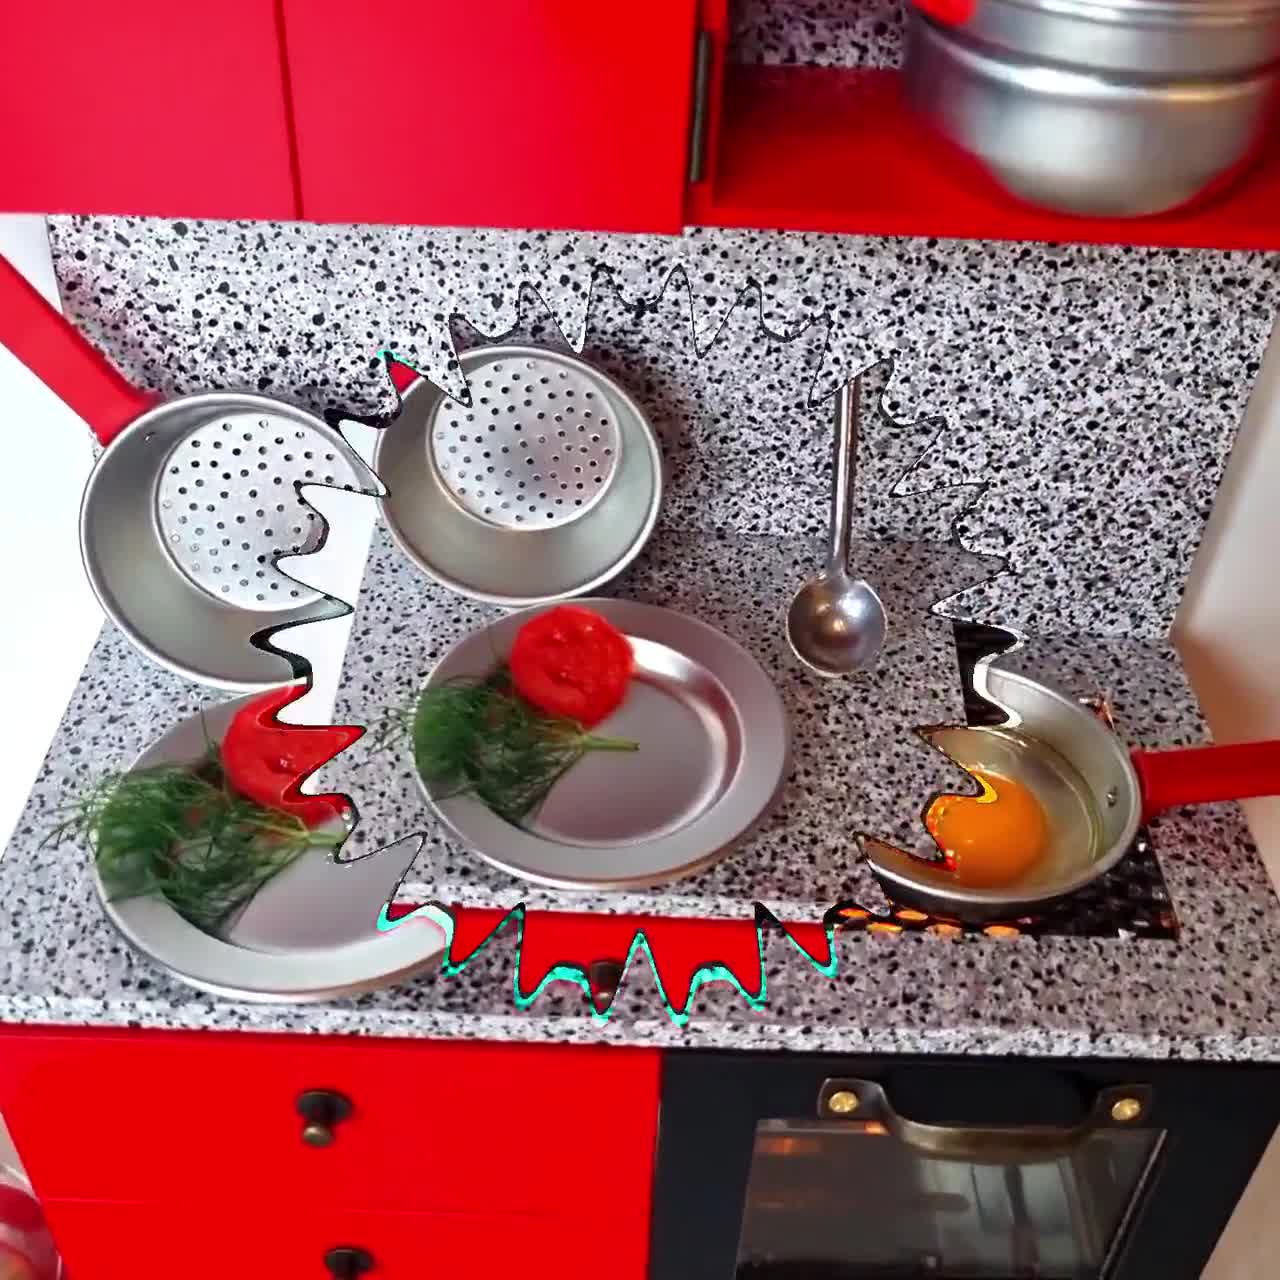 Mini ensemble de cuisine rouge pour enfants, version réelle